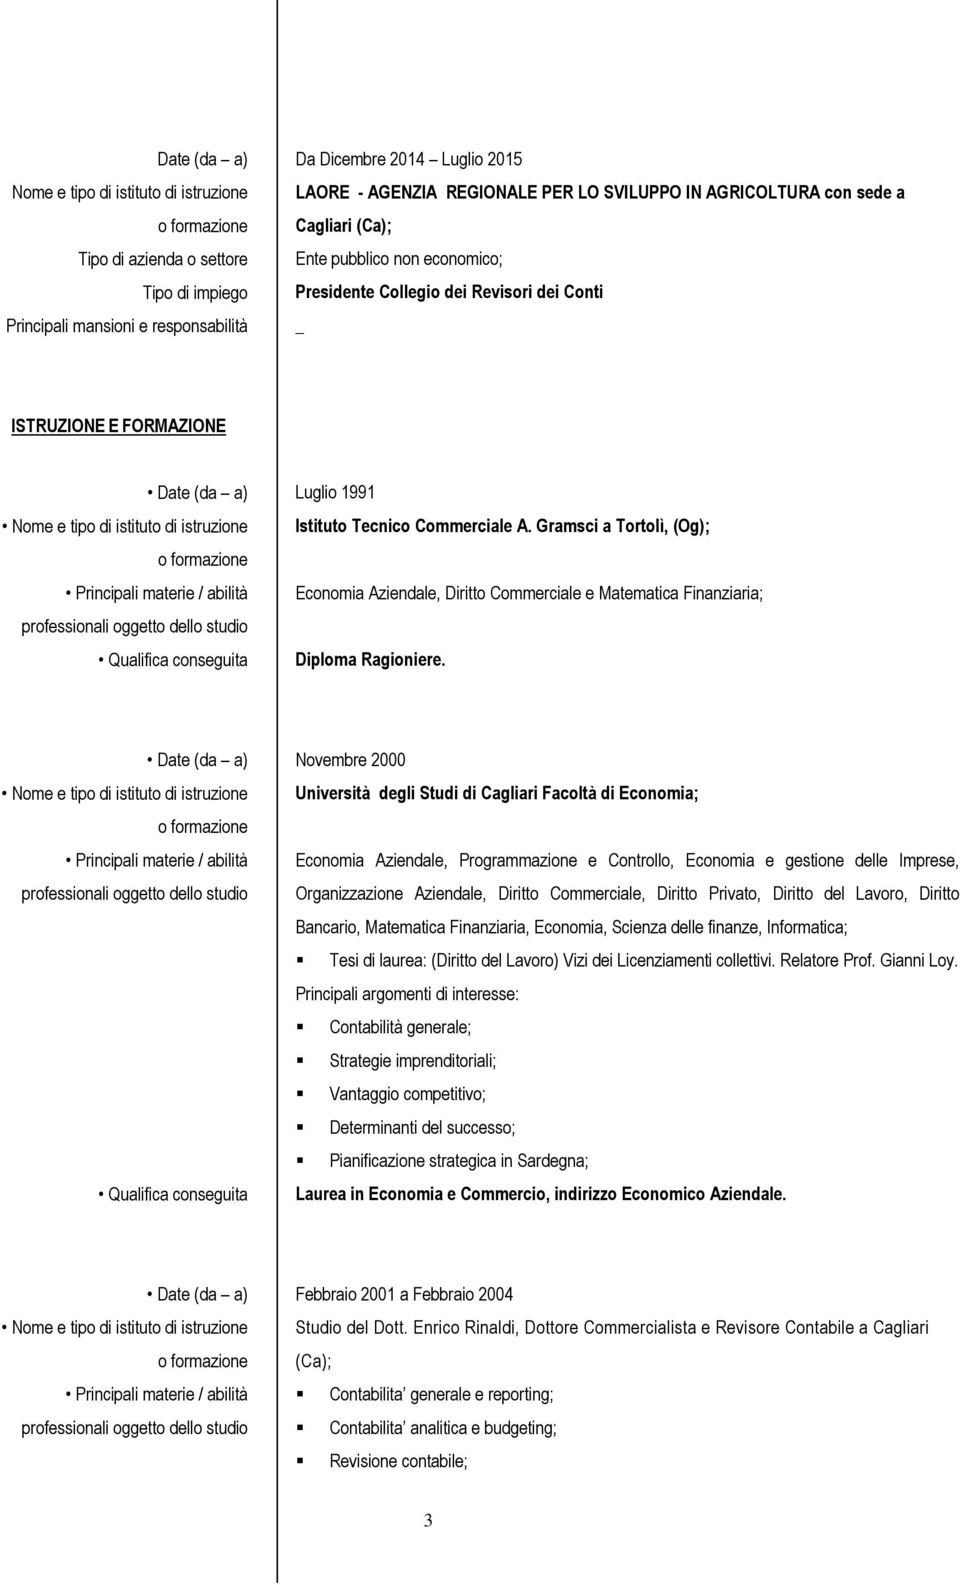 Gramsci a Tortolì, (Og); Economia Aziendale, Diritto Commerciale e Matematica Finanziaria; Diploma Ragioniere.